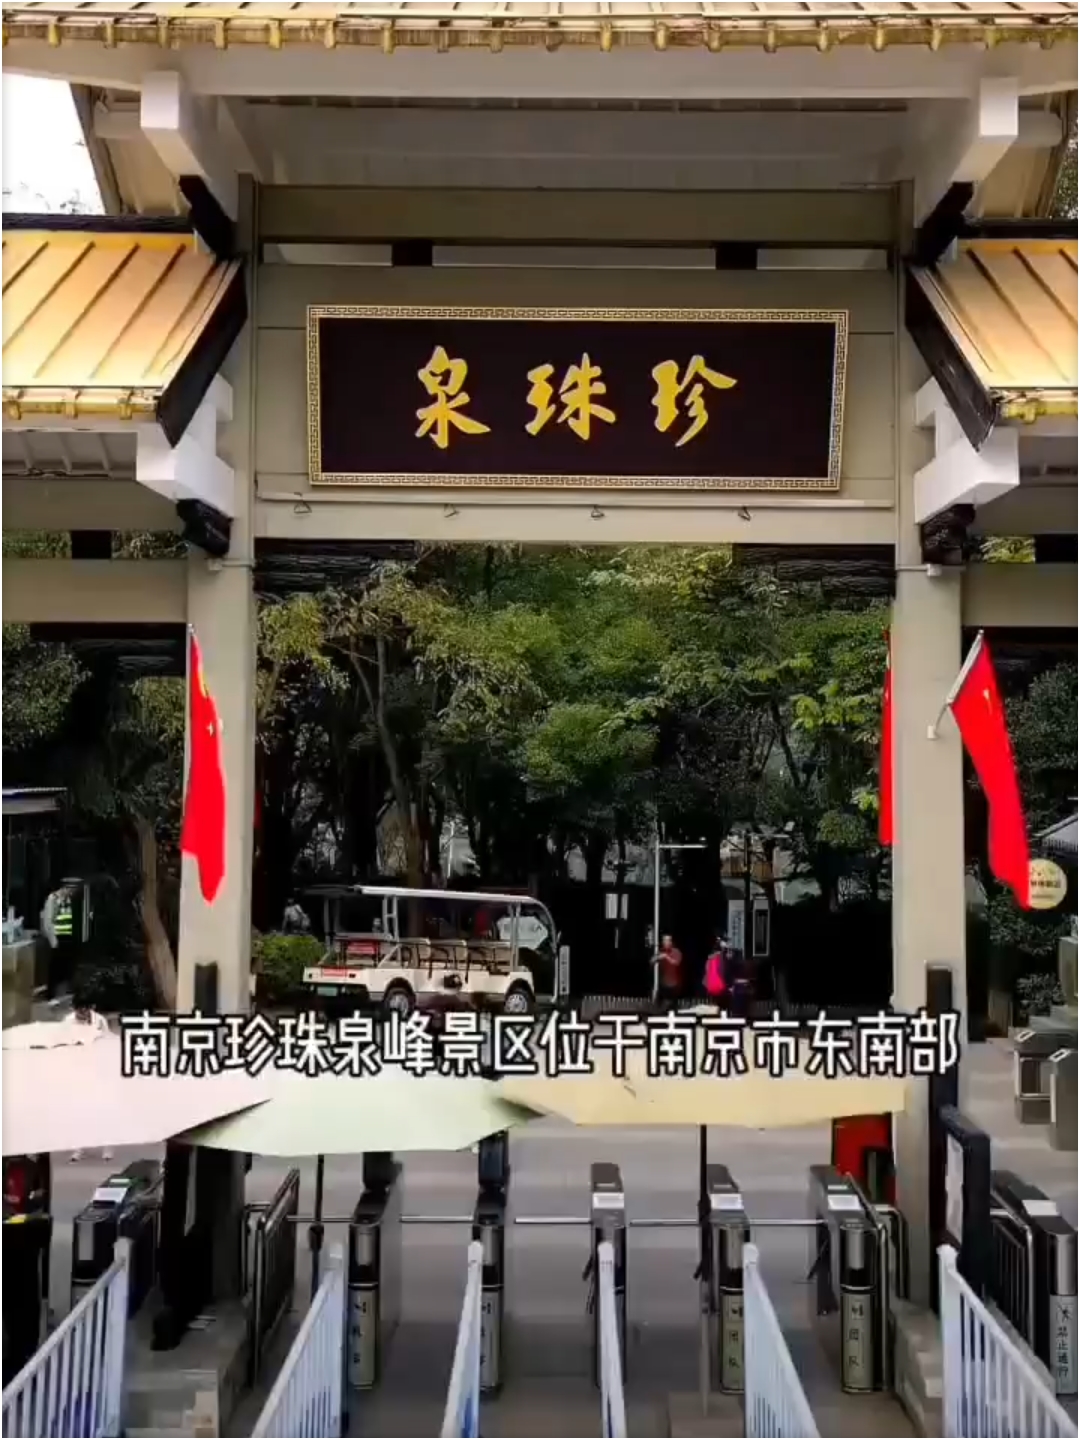 写在前面：半日游\n🔥简介：珍珠泉位于南京市浦口区定山西南麓以西，其地下水源丰富，水质优良，是南京主